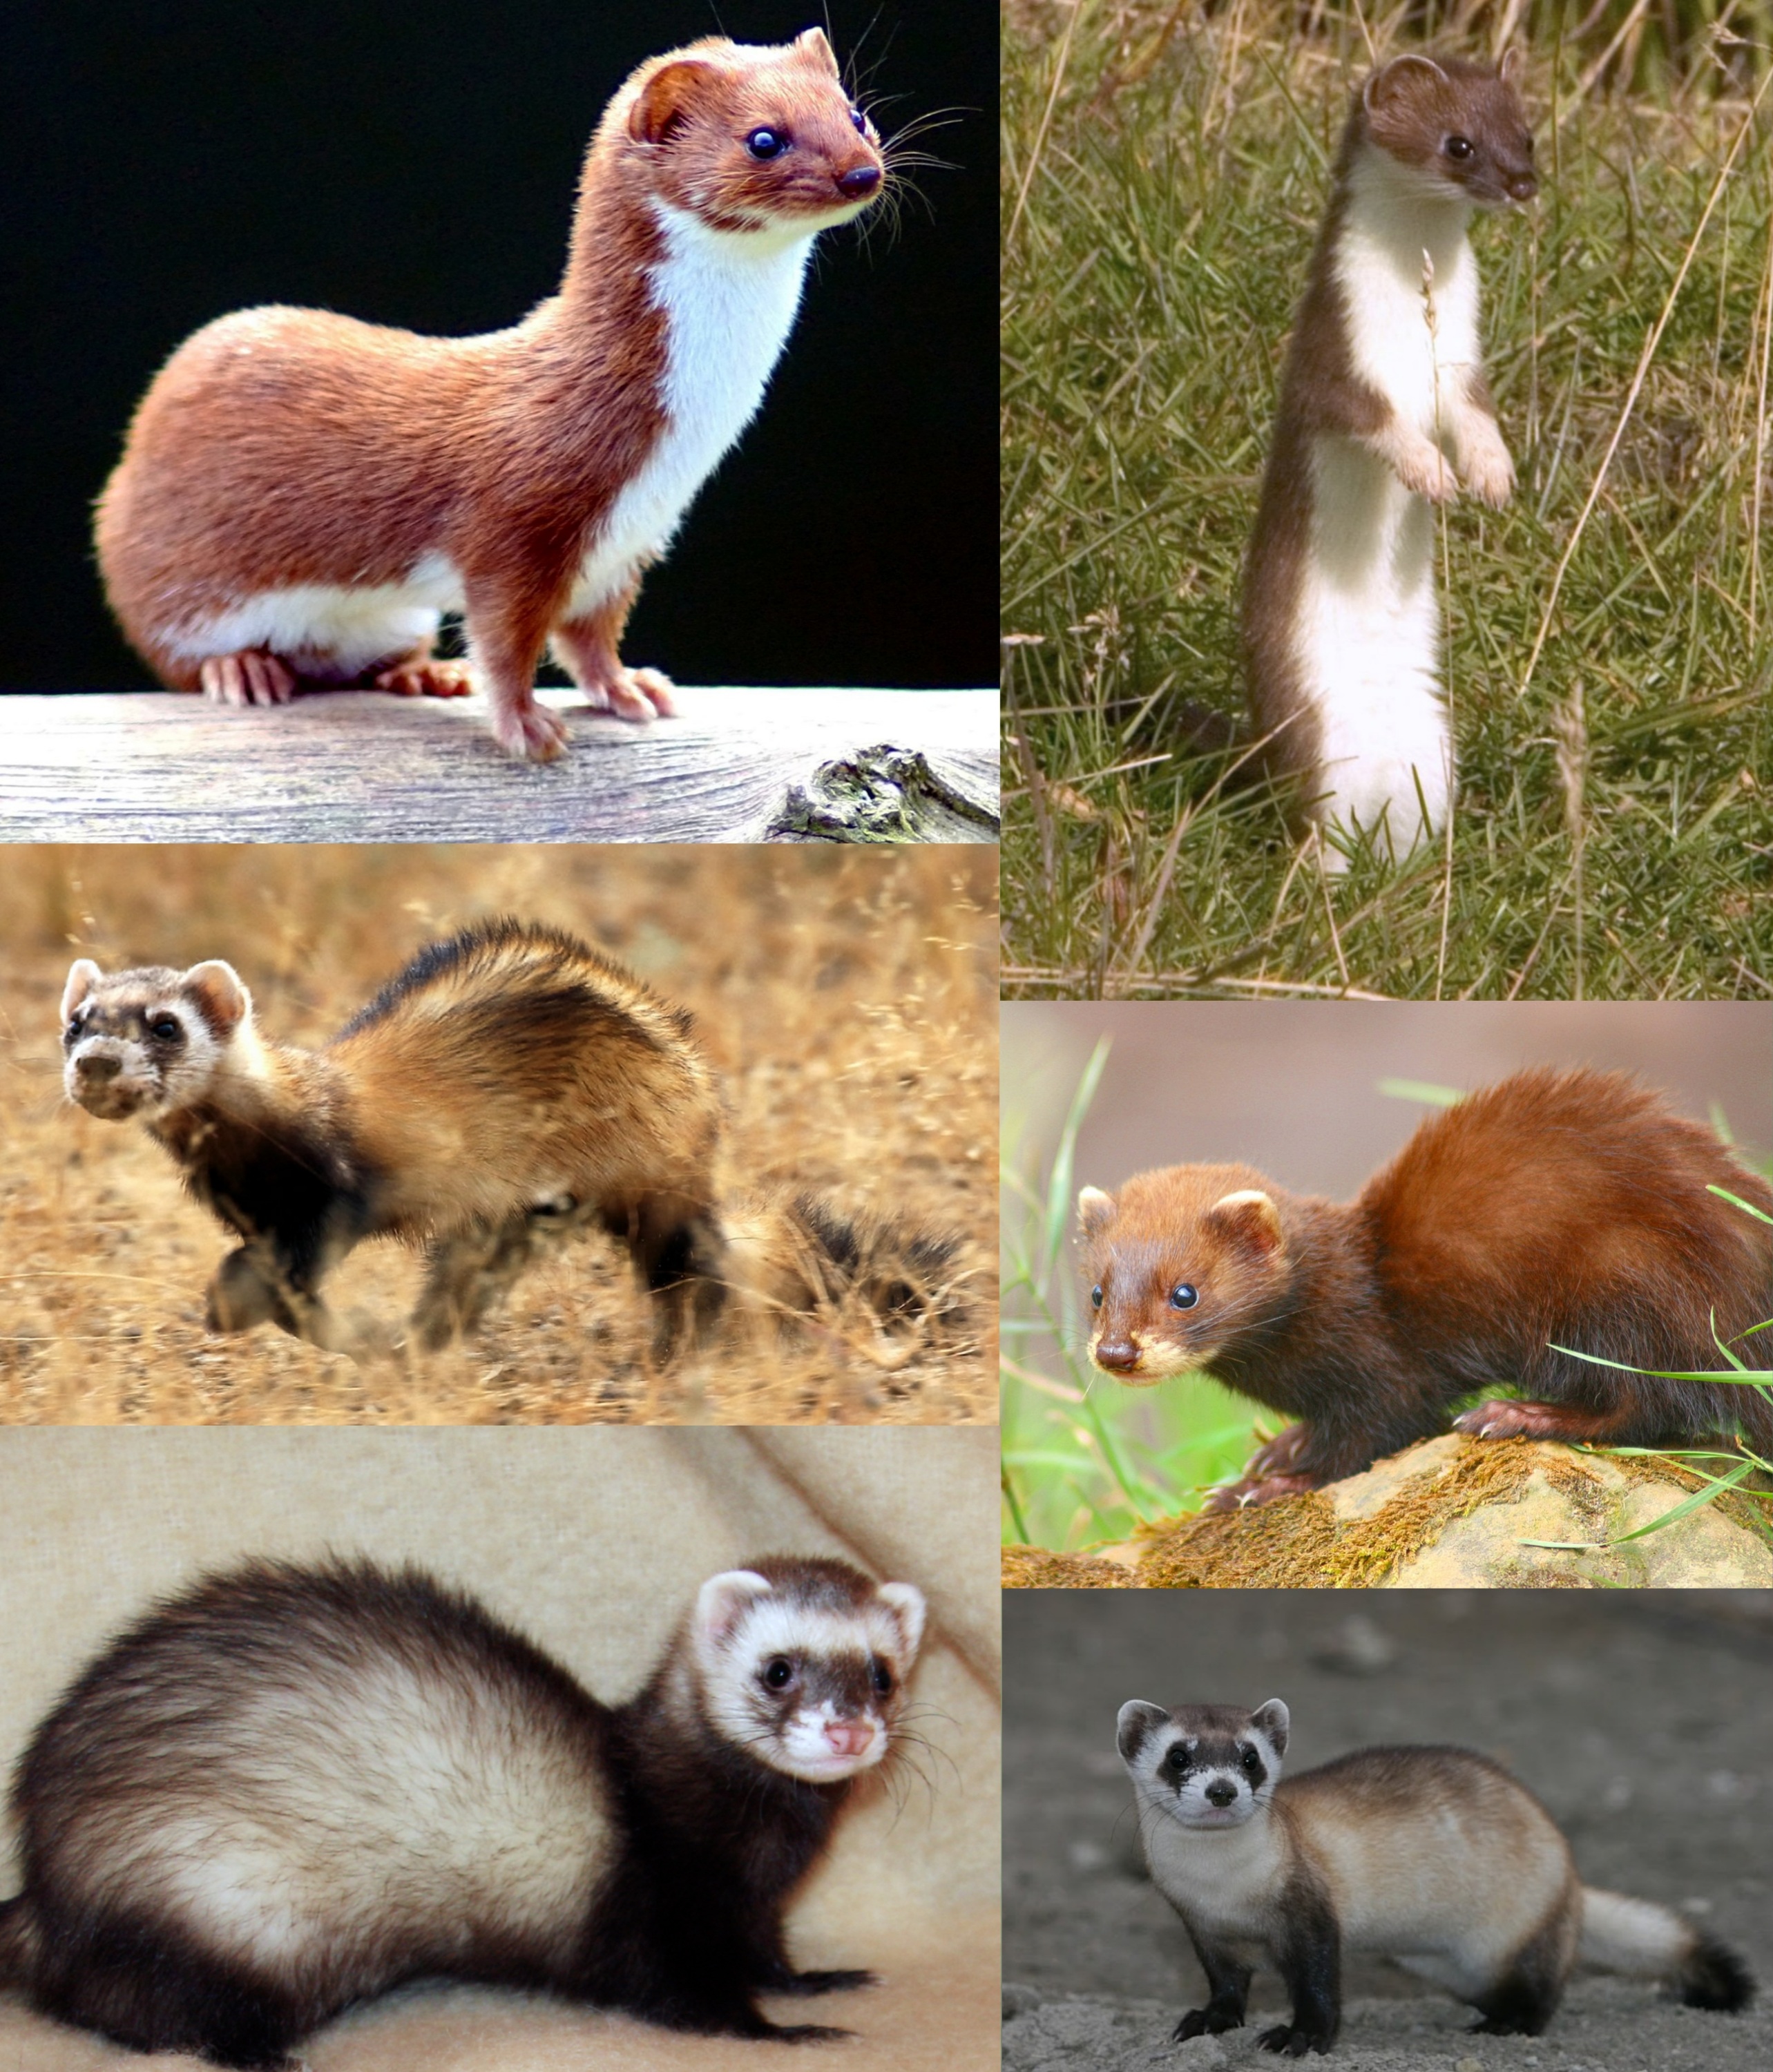 Weasel - Wikipedia